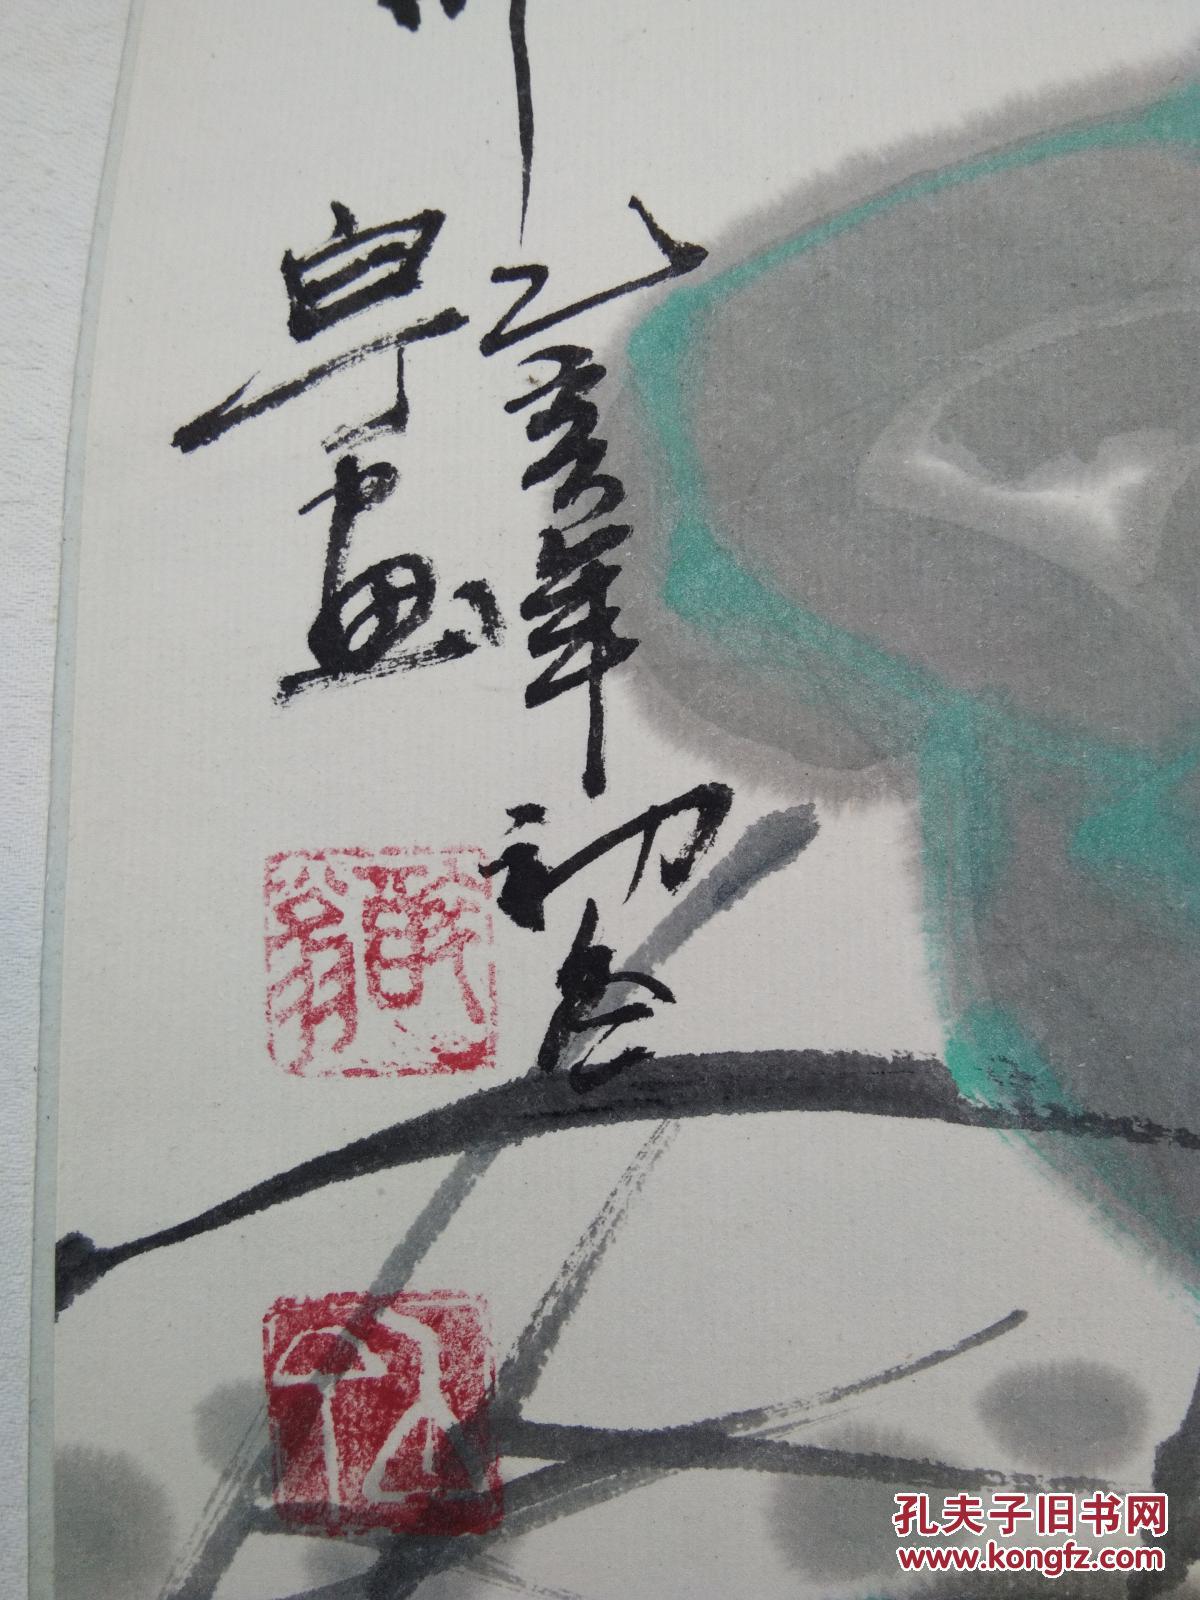 萧县著名画家白丁仕女图 拍品编号:29928158